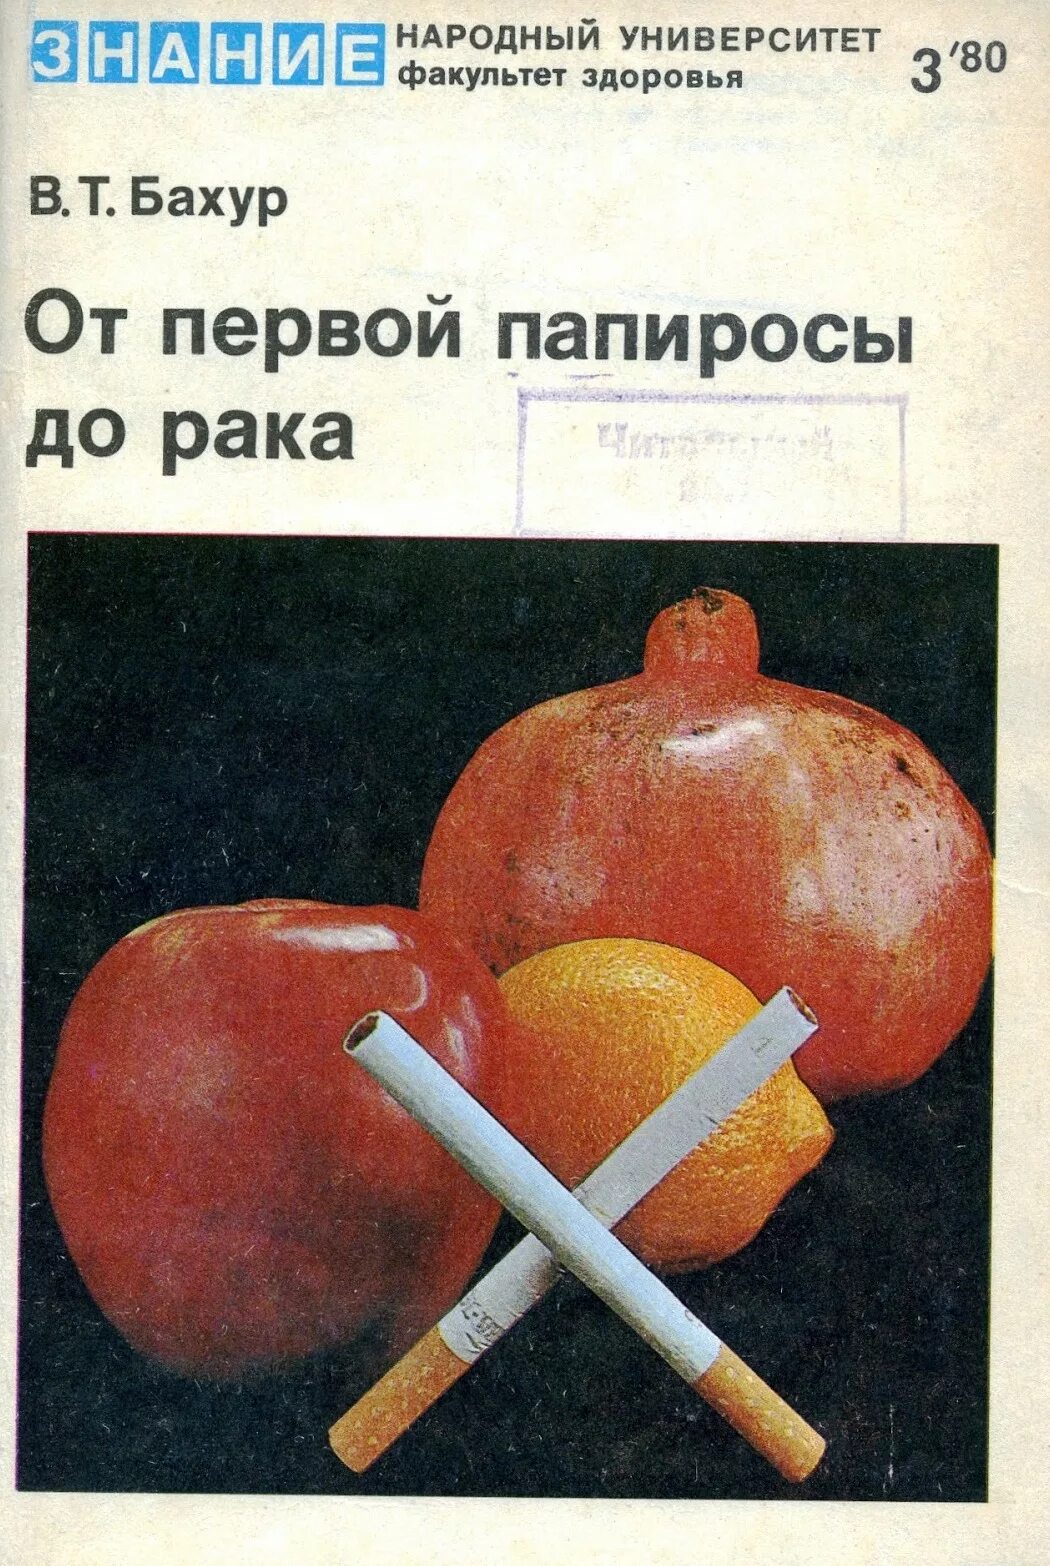 Факультет здоровья. Влияние табакокурения на организм человека. "Факультет здоровья" 1967 № 24.